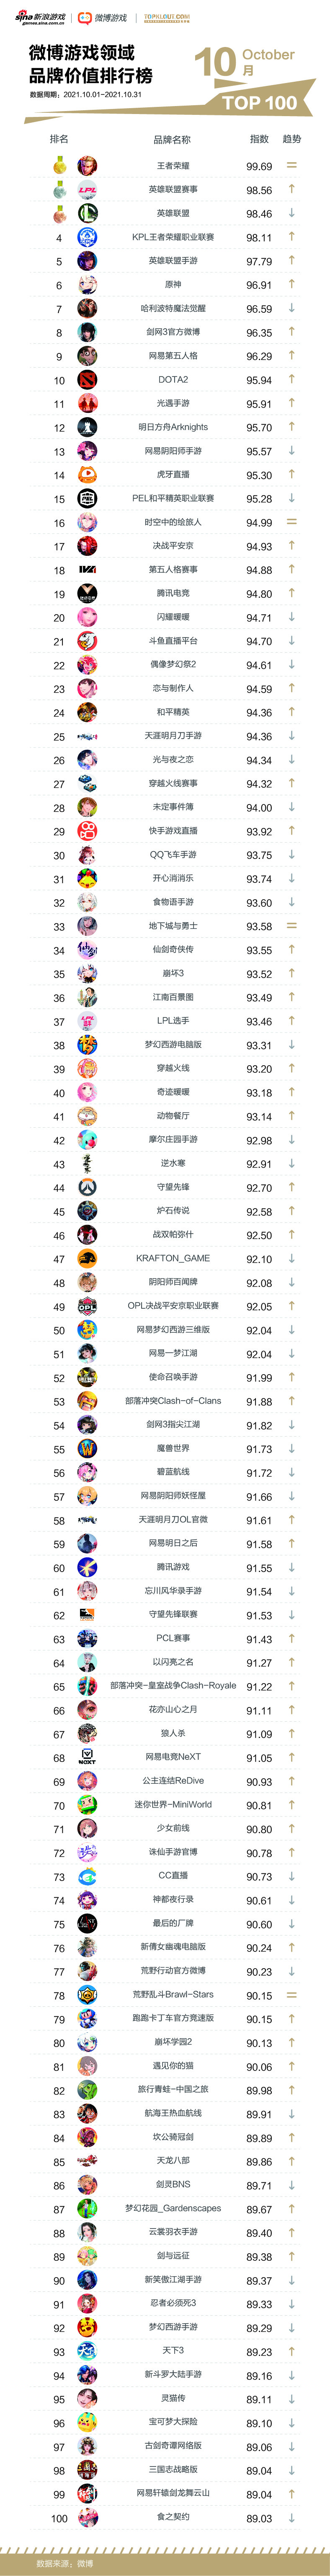 Trận đấu chung kết của Zhejiang 4 trò chơi đã thực hiện 88 điểm để thực hiện Epic -level đơn -điều kiện 8 điểm & amp; 15 sai lầm về sai lầm